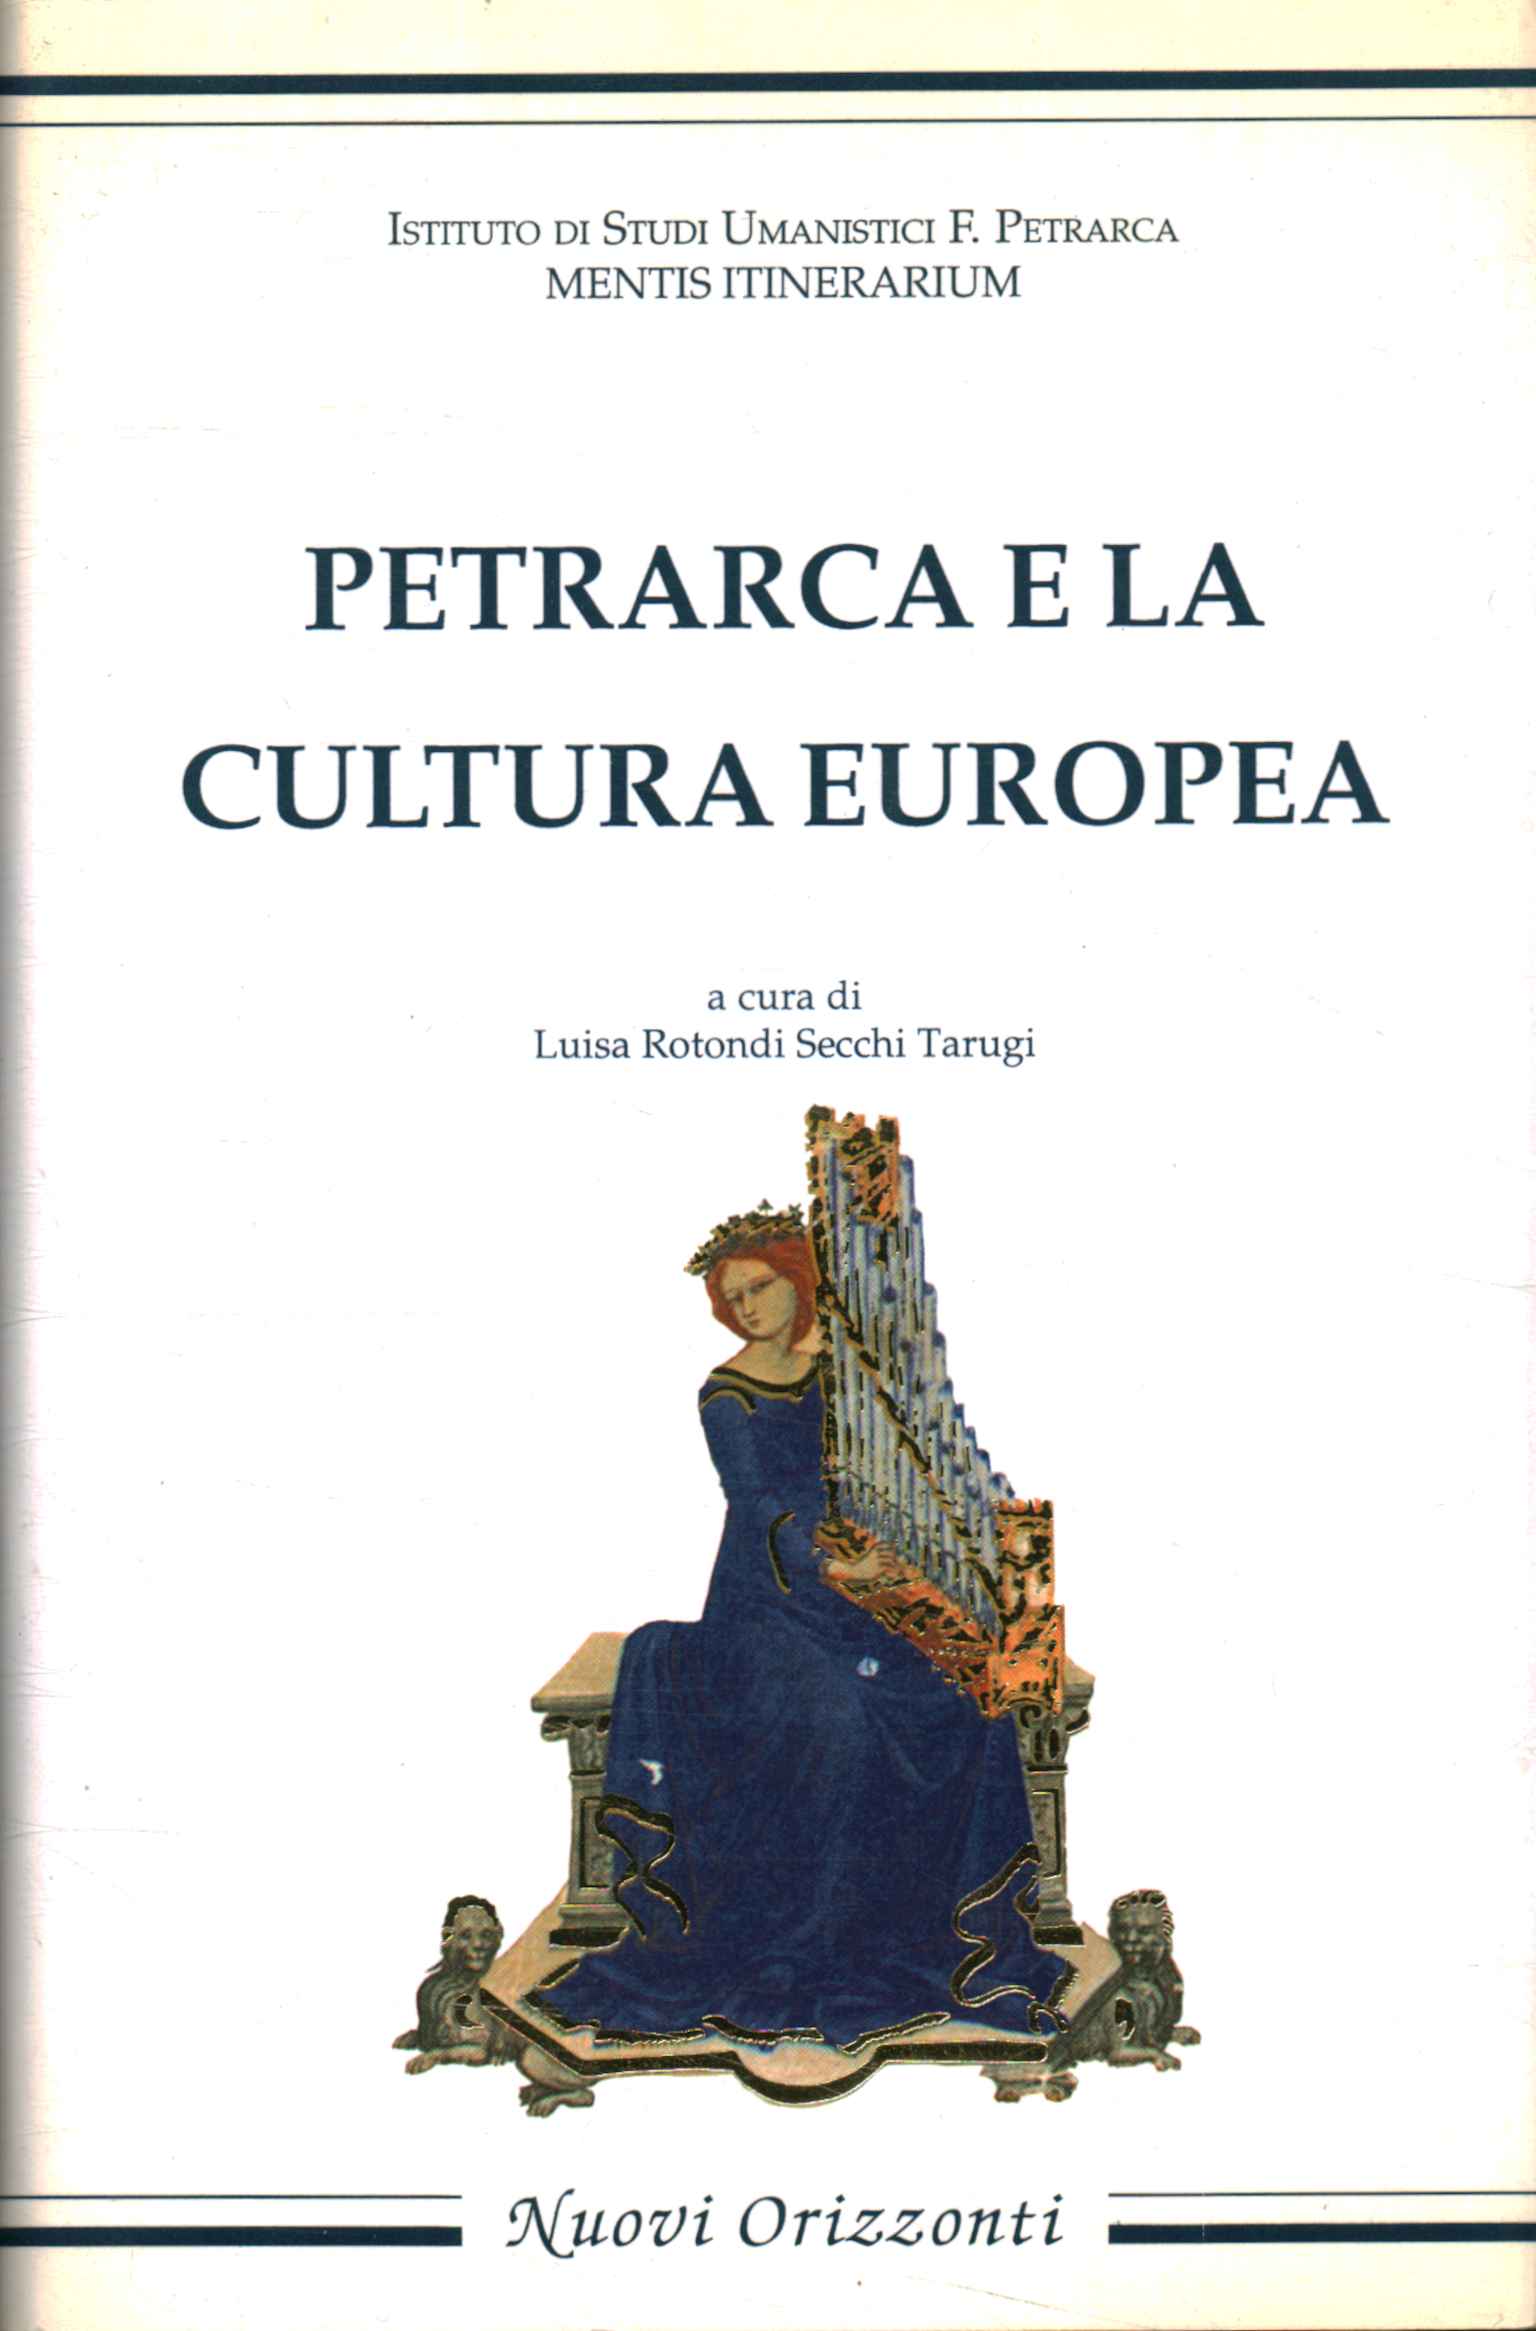 Petrarca y la cultura europea